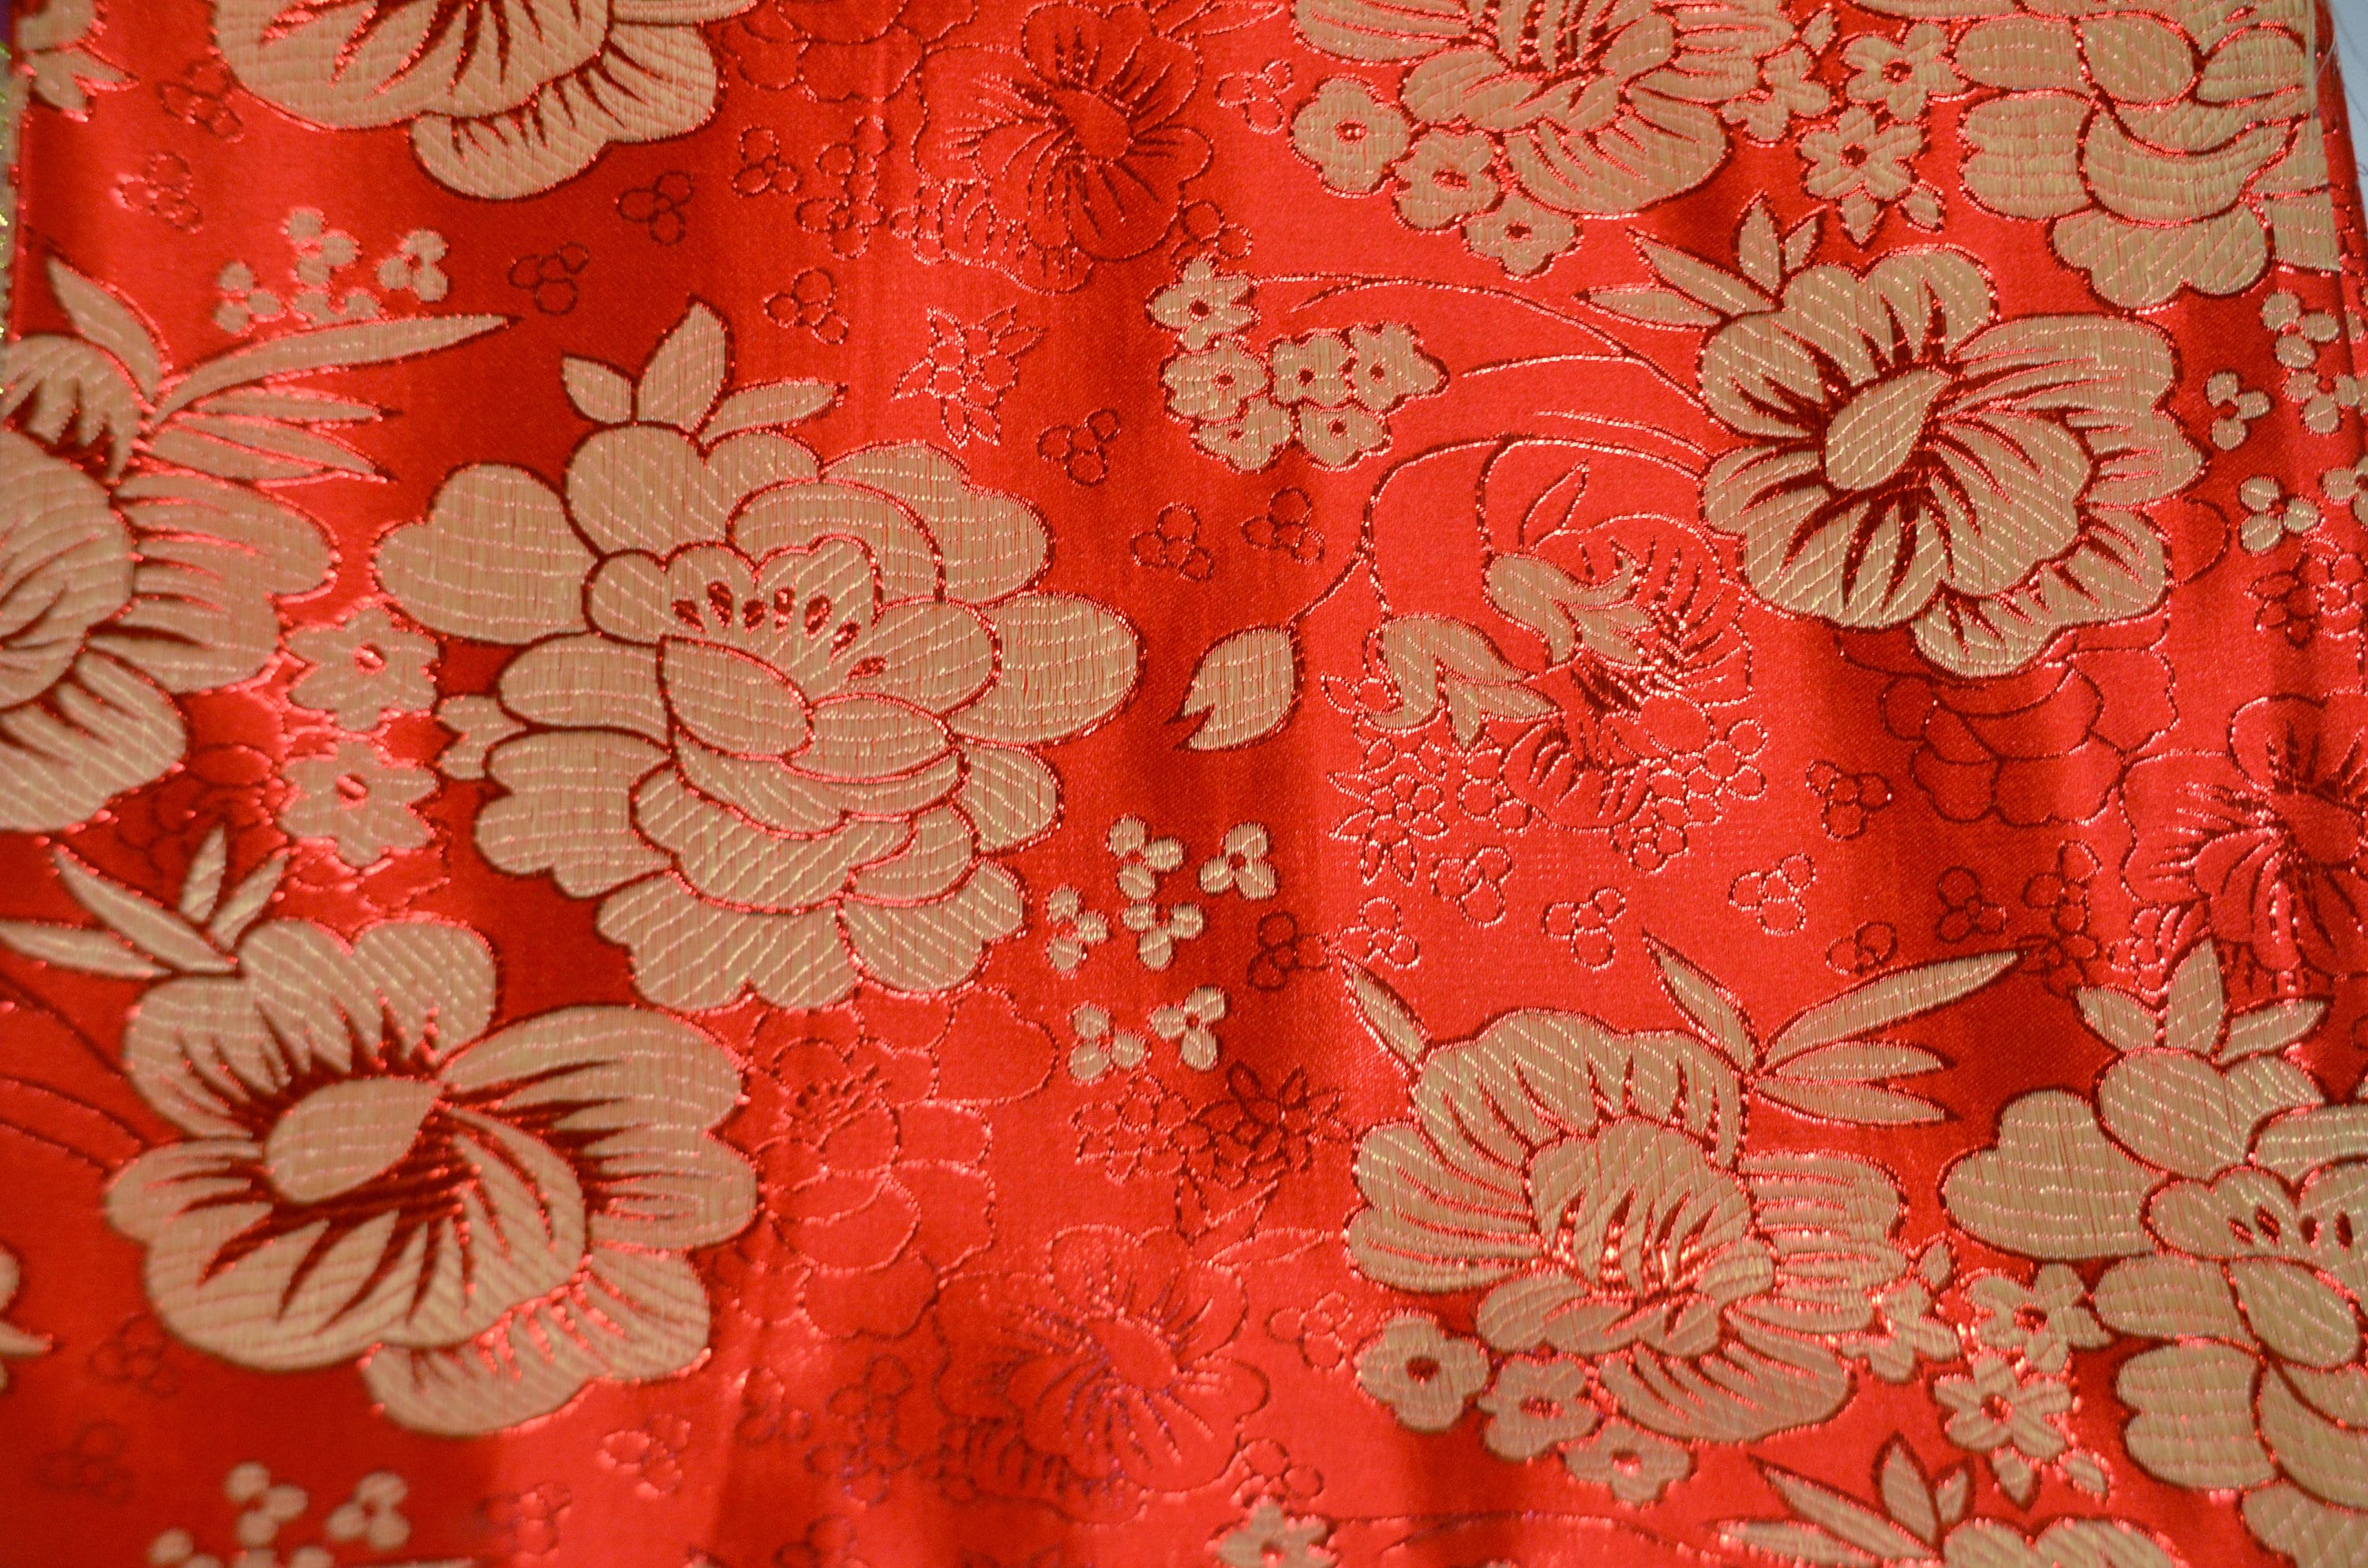 Chinese Flower Brocade Fabric 9.99 Full Yard Price - Etsy